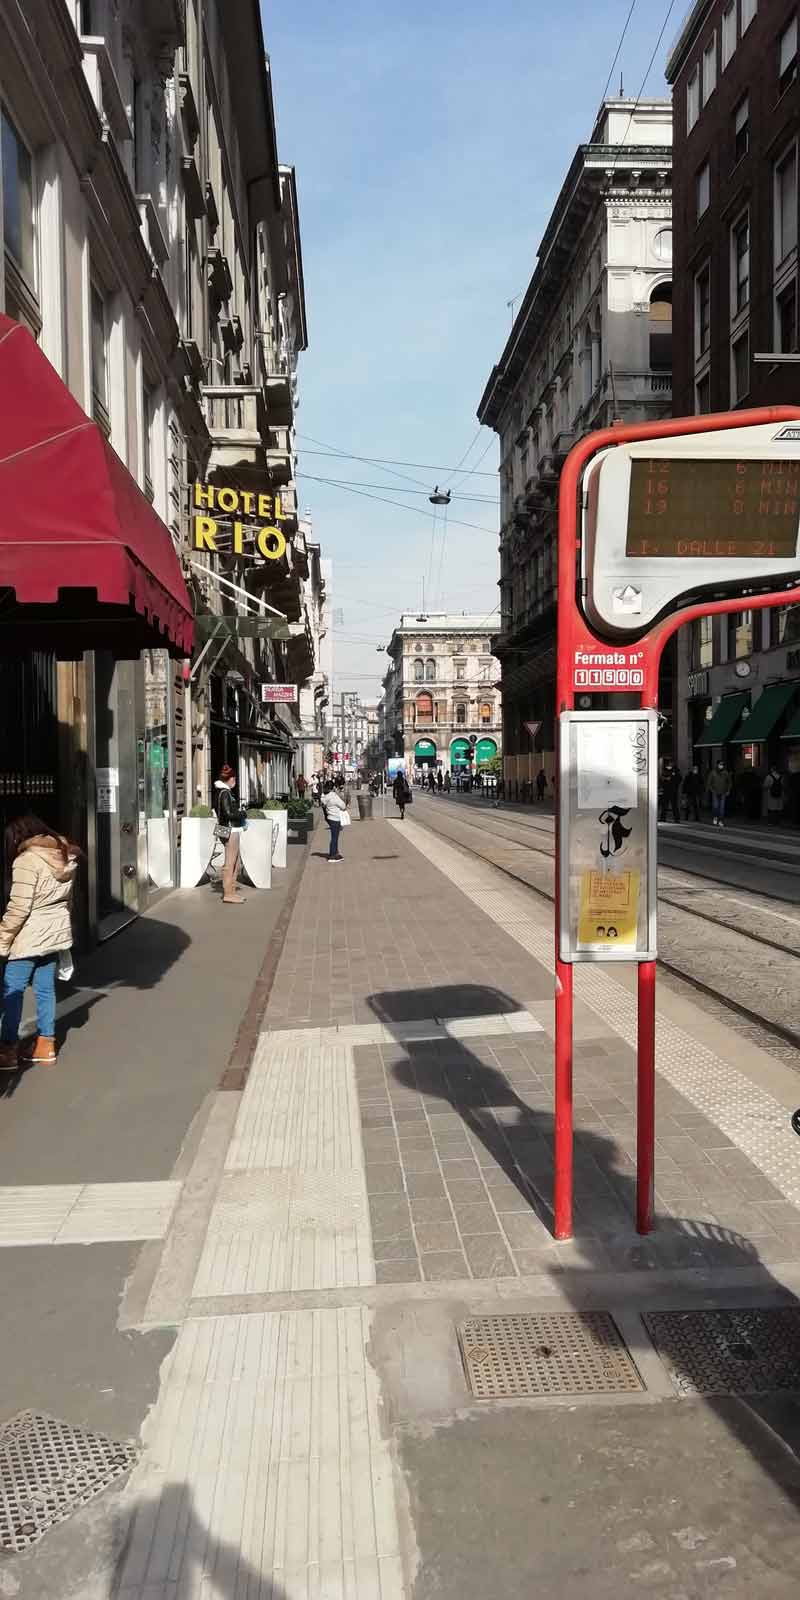 Piano quartieri: linee tramviarie e corridoi veloci